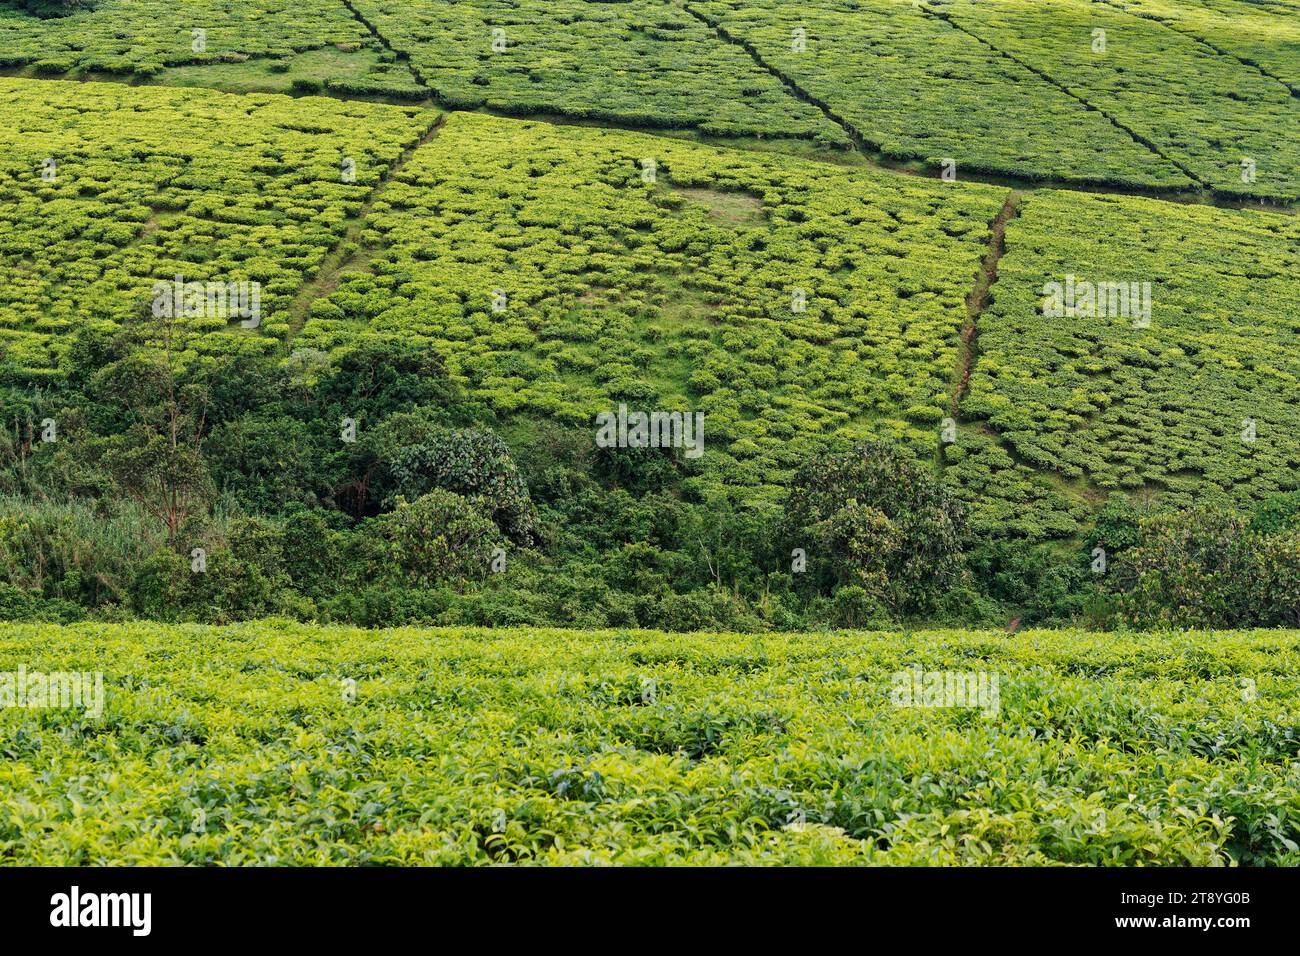 Paysage de plantation de thé en Ouganda Afrique, champs verts avec plante de thé, détail de plante de thé, ciel bleu avec des nuages, produit d'exportation important. Banque D'Images